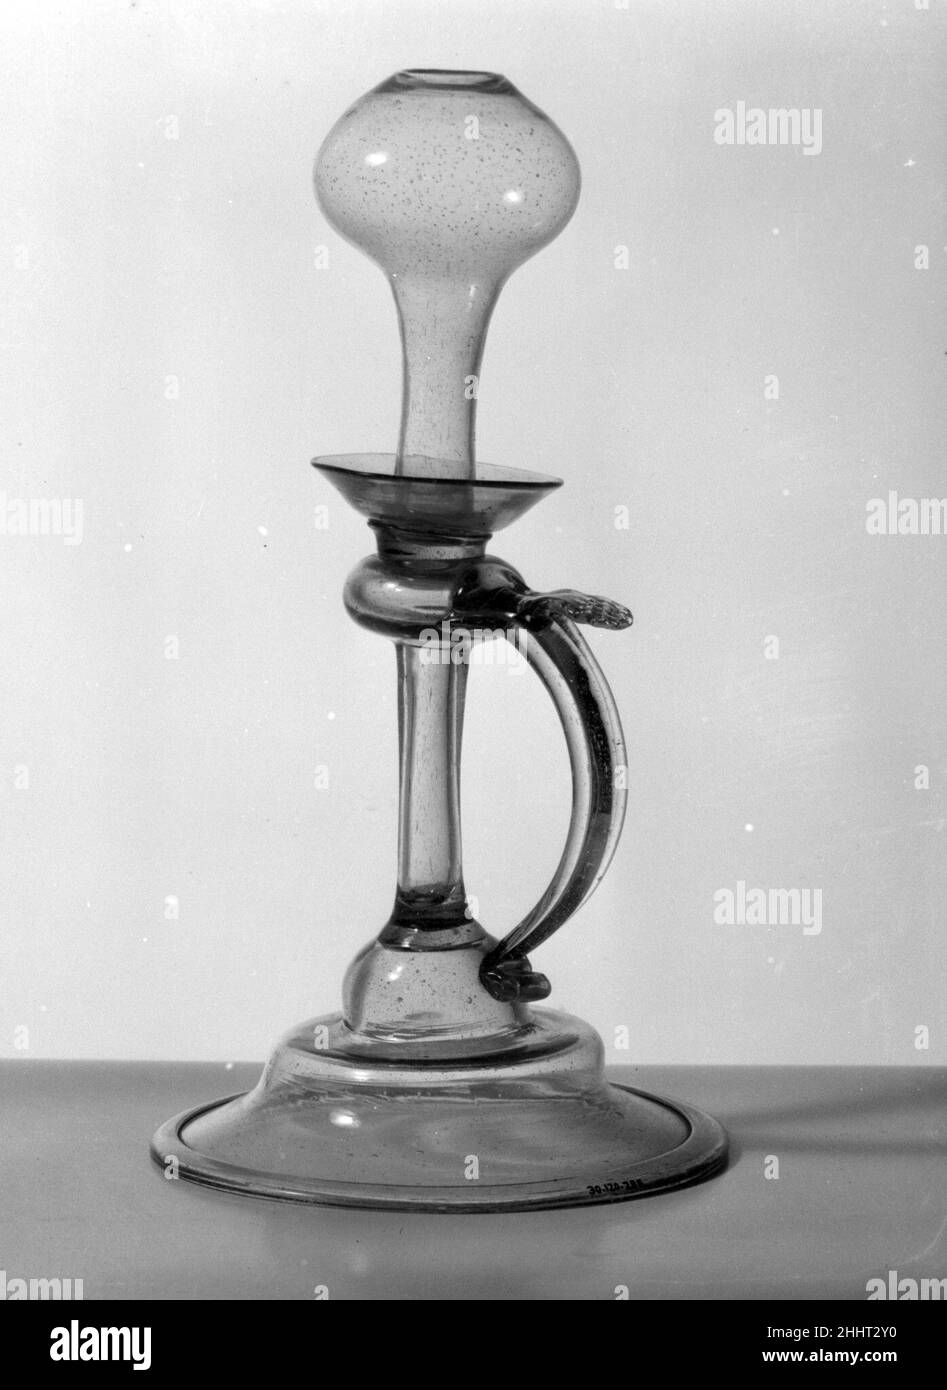 Französische lampe Schwarzweiß-Stockfotos und -bilder - Alamy